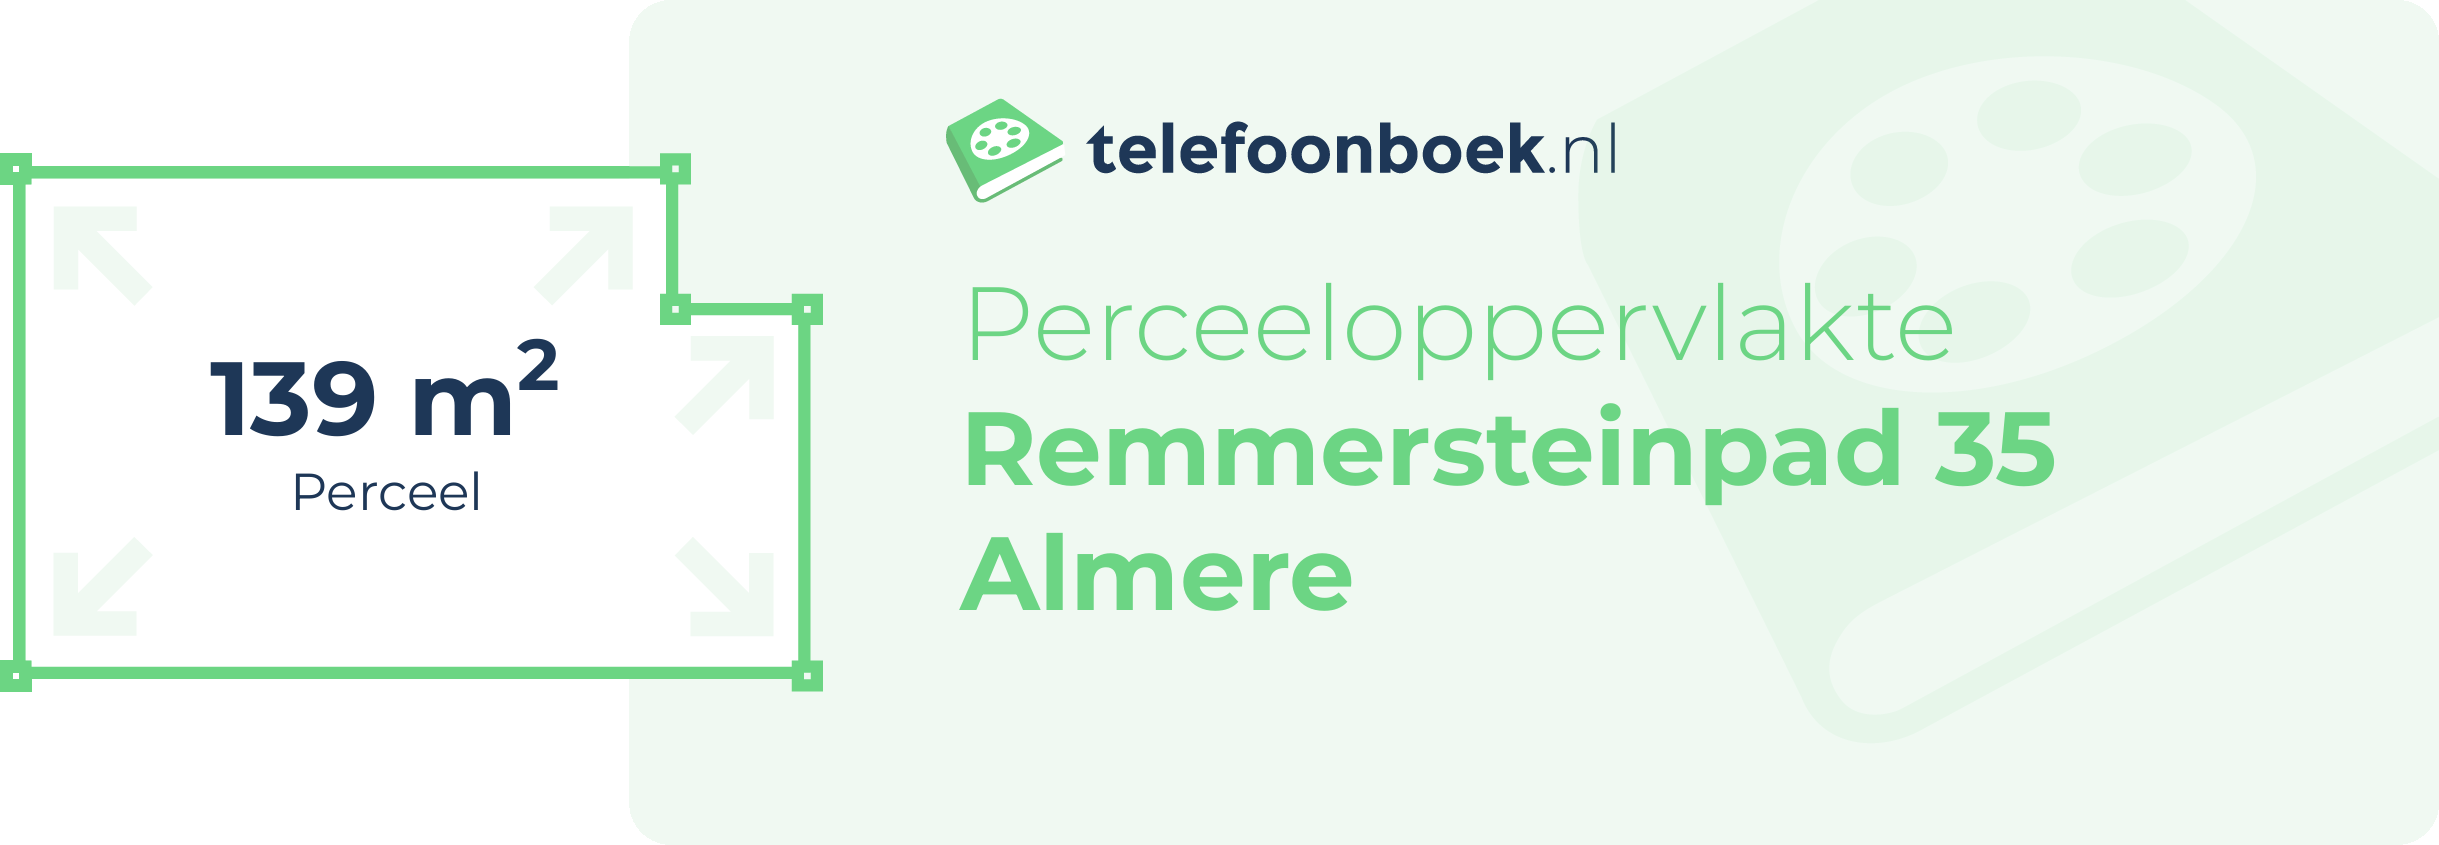 Perceeloppervlakte Remmersteinpad 35 Almere